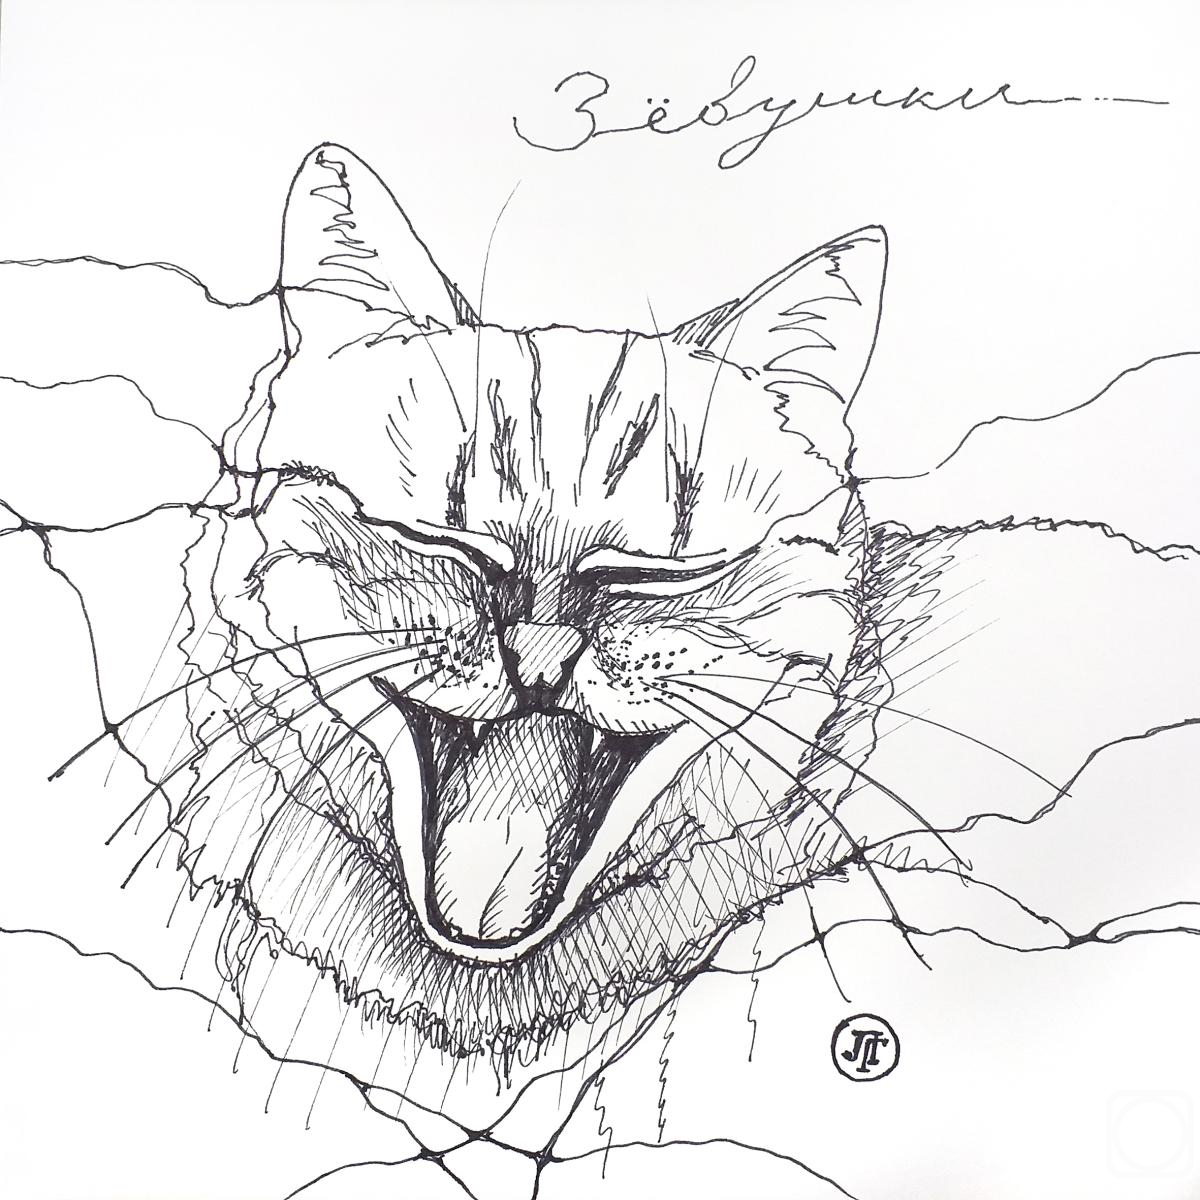 Grebennikova Lyudmila. Yawning. Series "Cat's Secret"